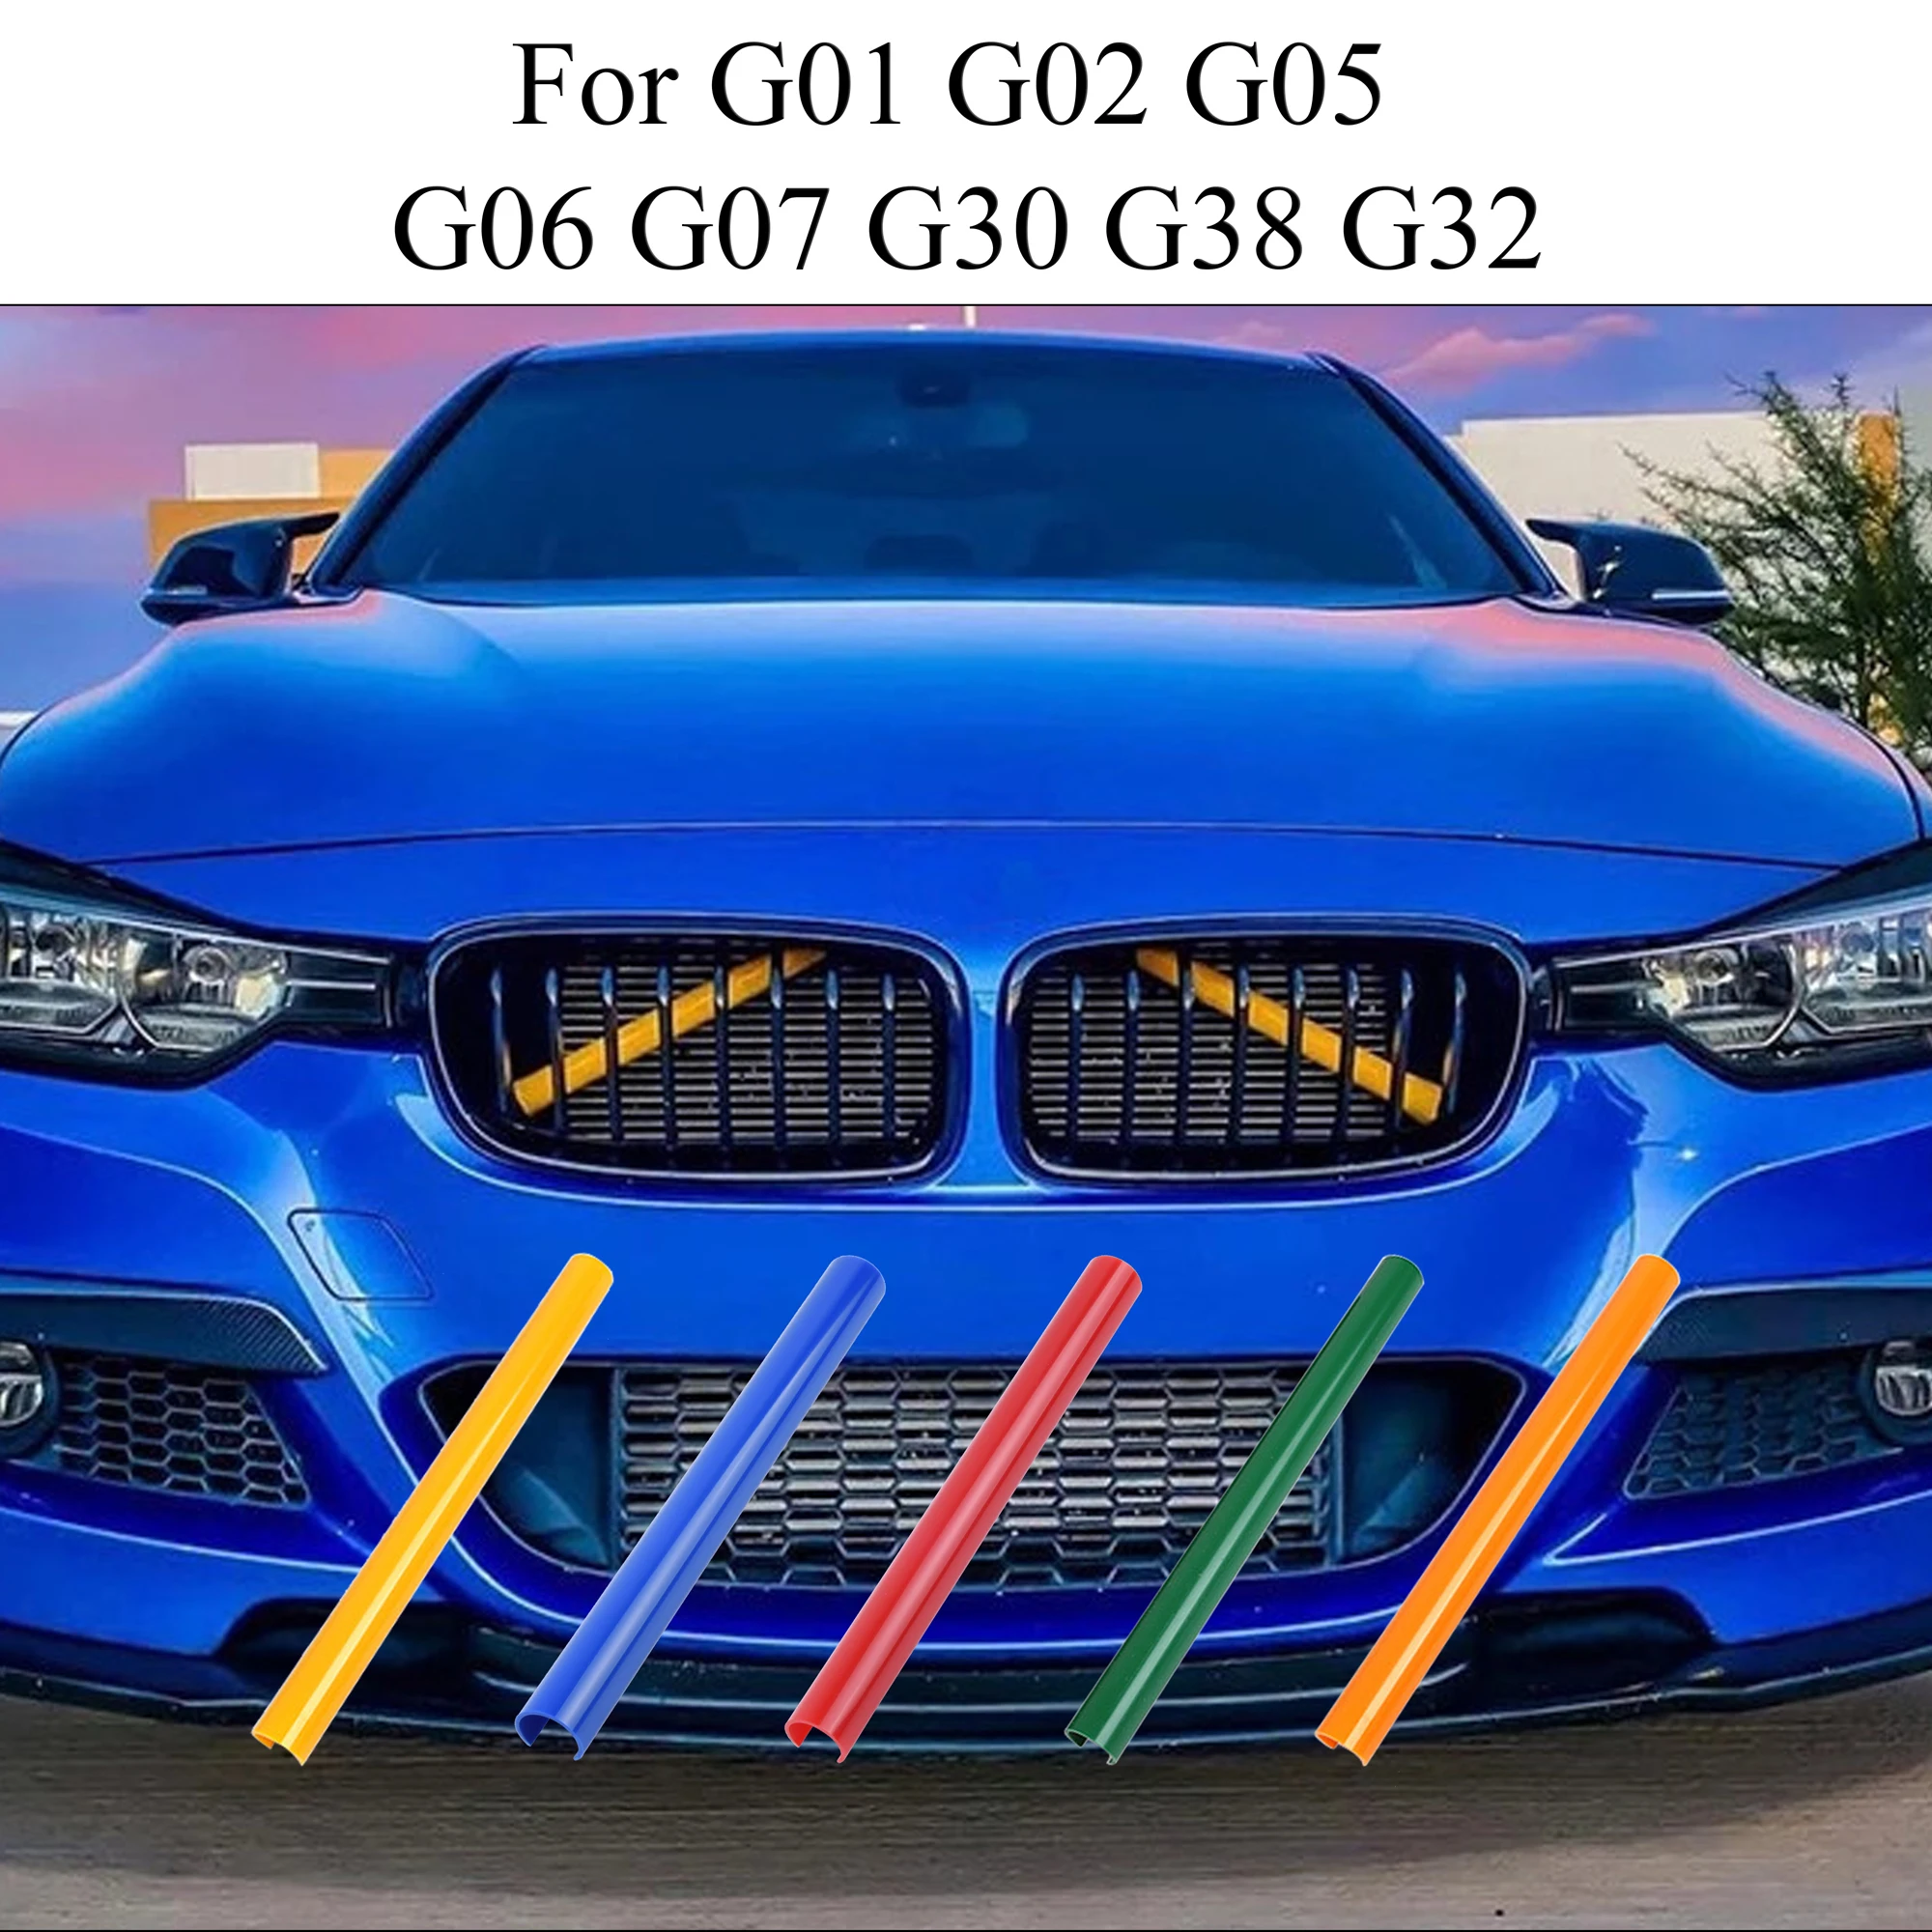 شرائط أمامية لسيارات BMW G01 G02 G05 G06 G07 G30 G32 6 ملحقات زينة ملونة